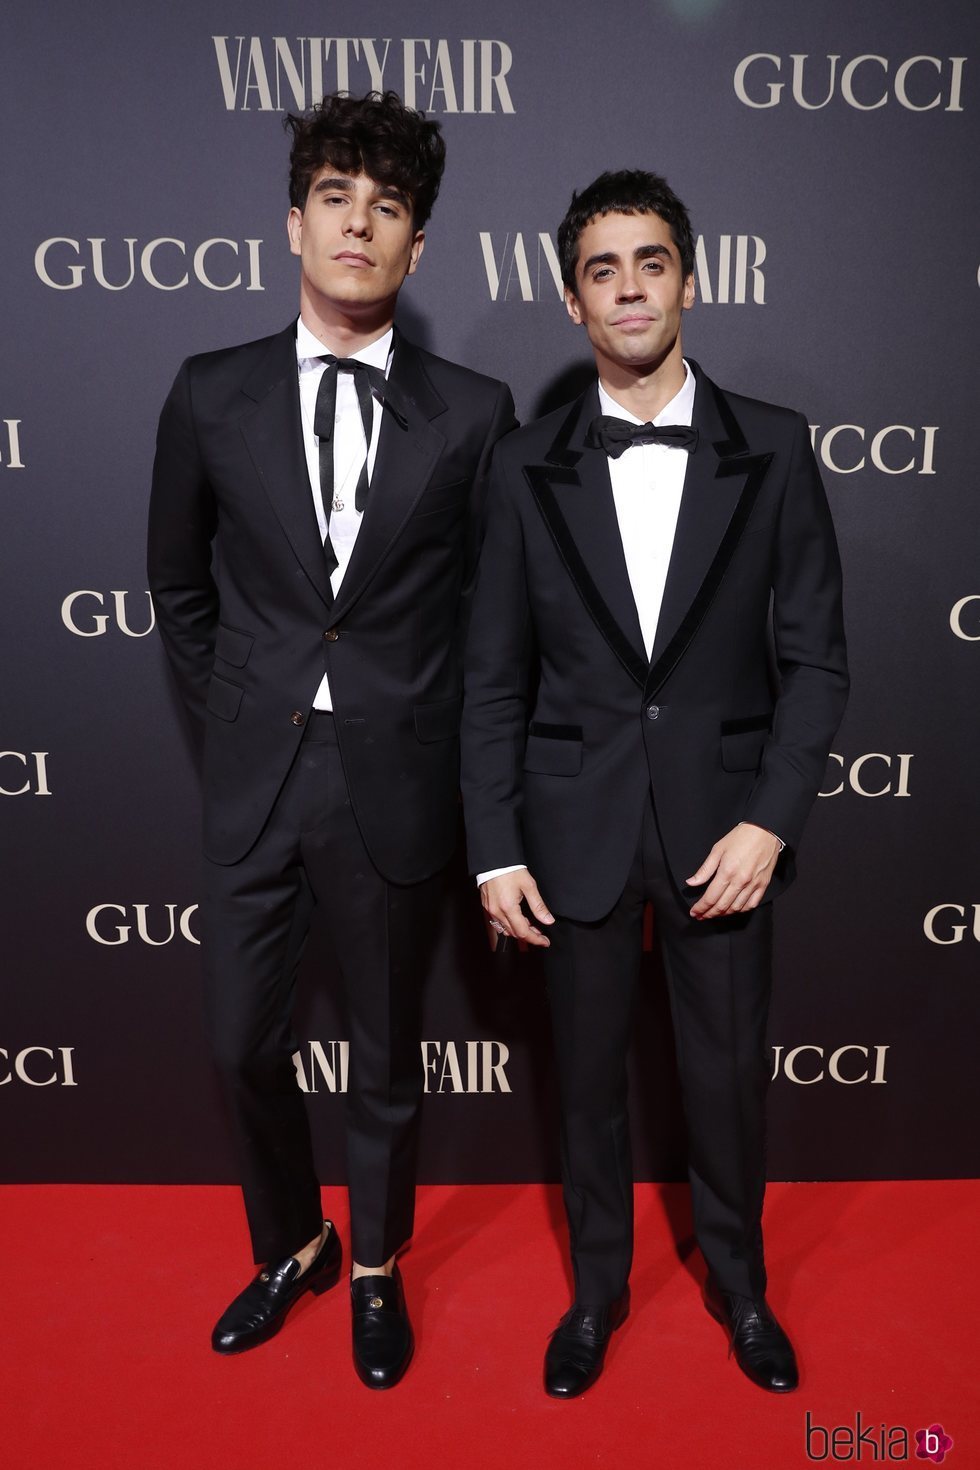 Javier Calvo y Javier Ambrossi (los Javis) en la alfombra de la fiesta de Vanity Fair 2018